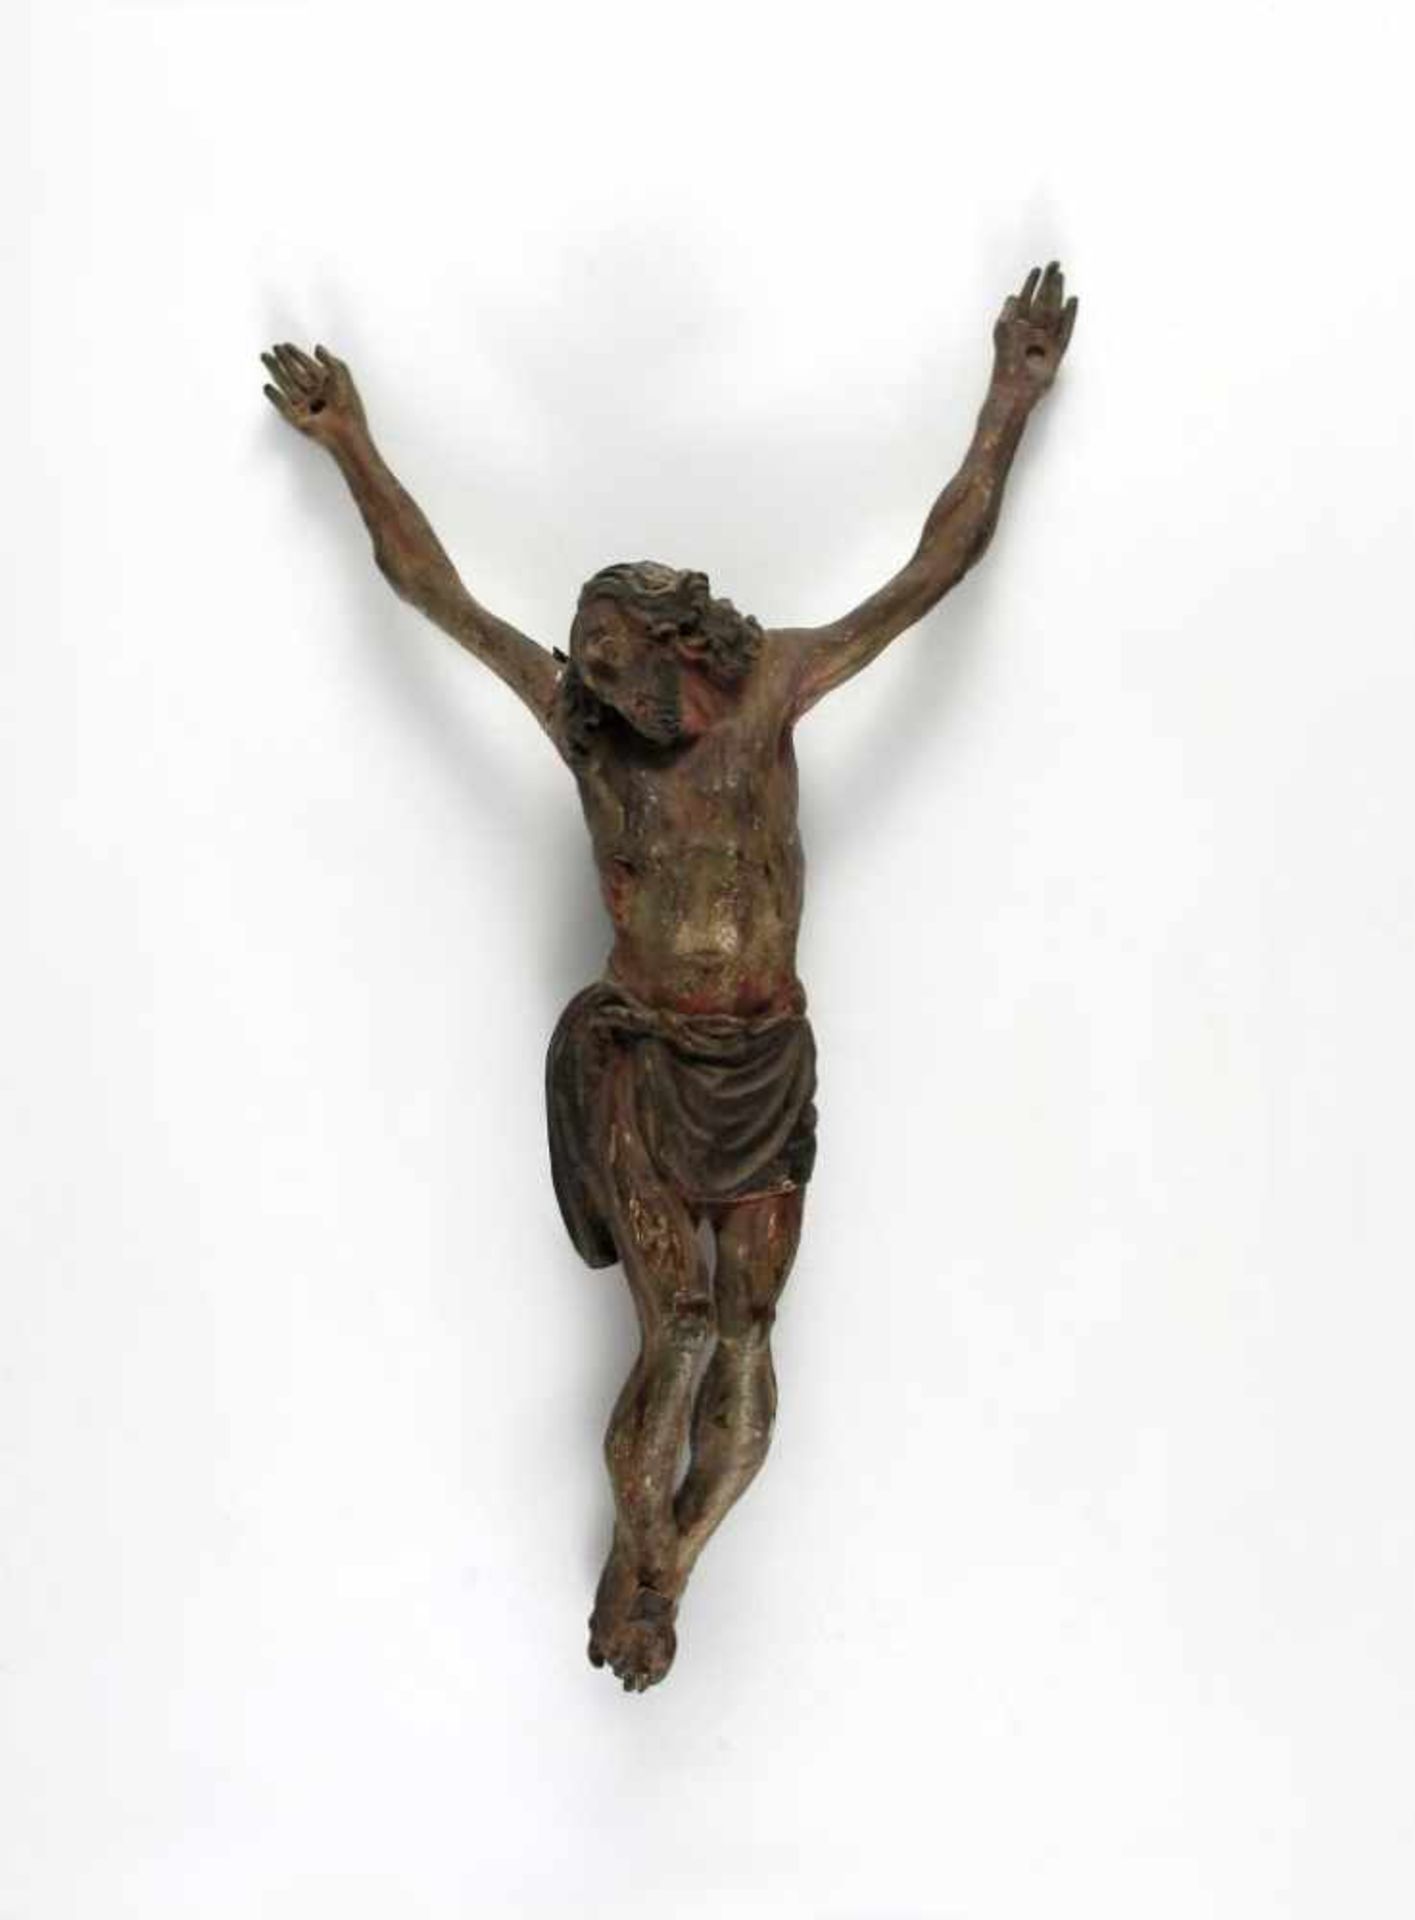 Kruzifixus. Dreinageltypus. Holz gefasst. Frühes 19. Jh. H 24,5 cm